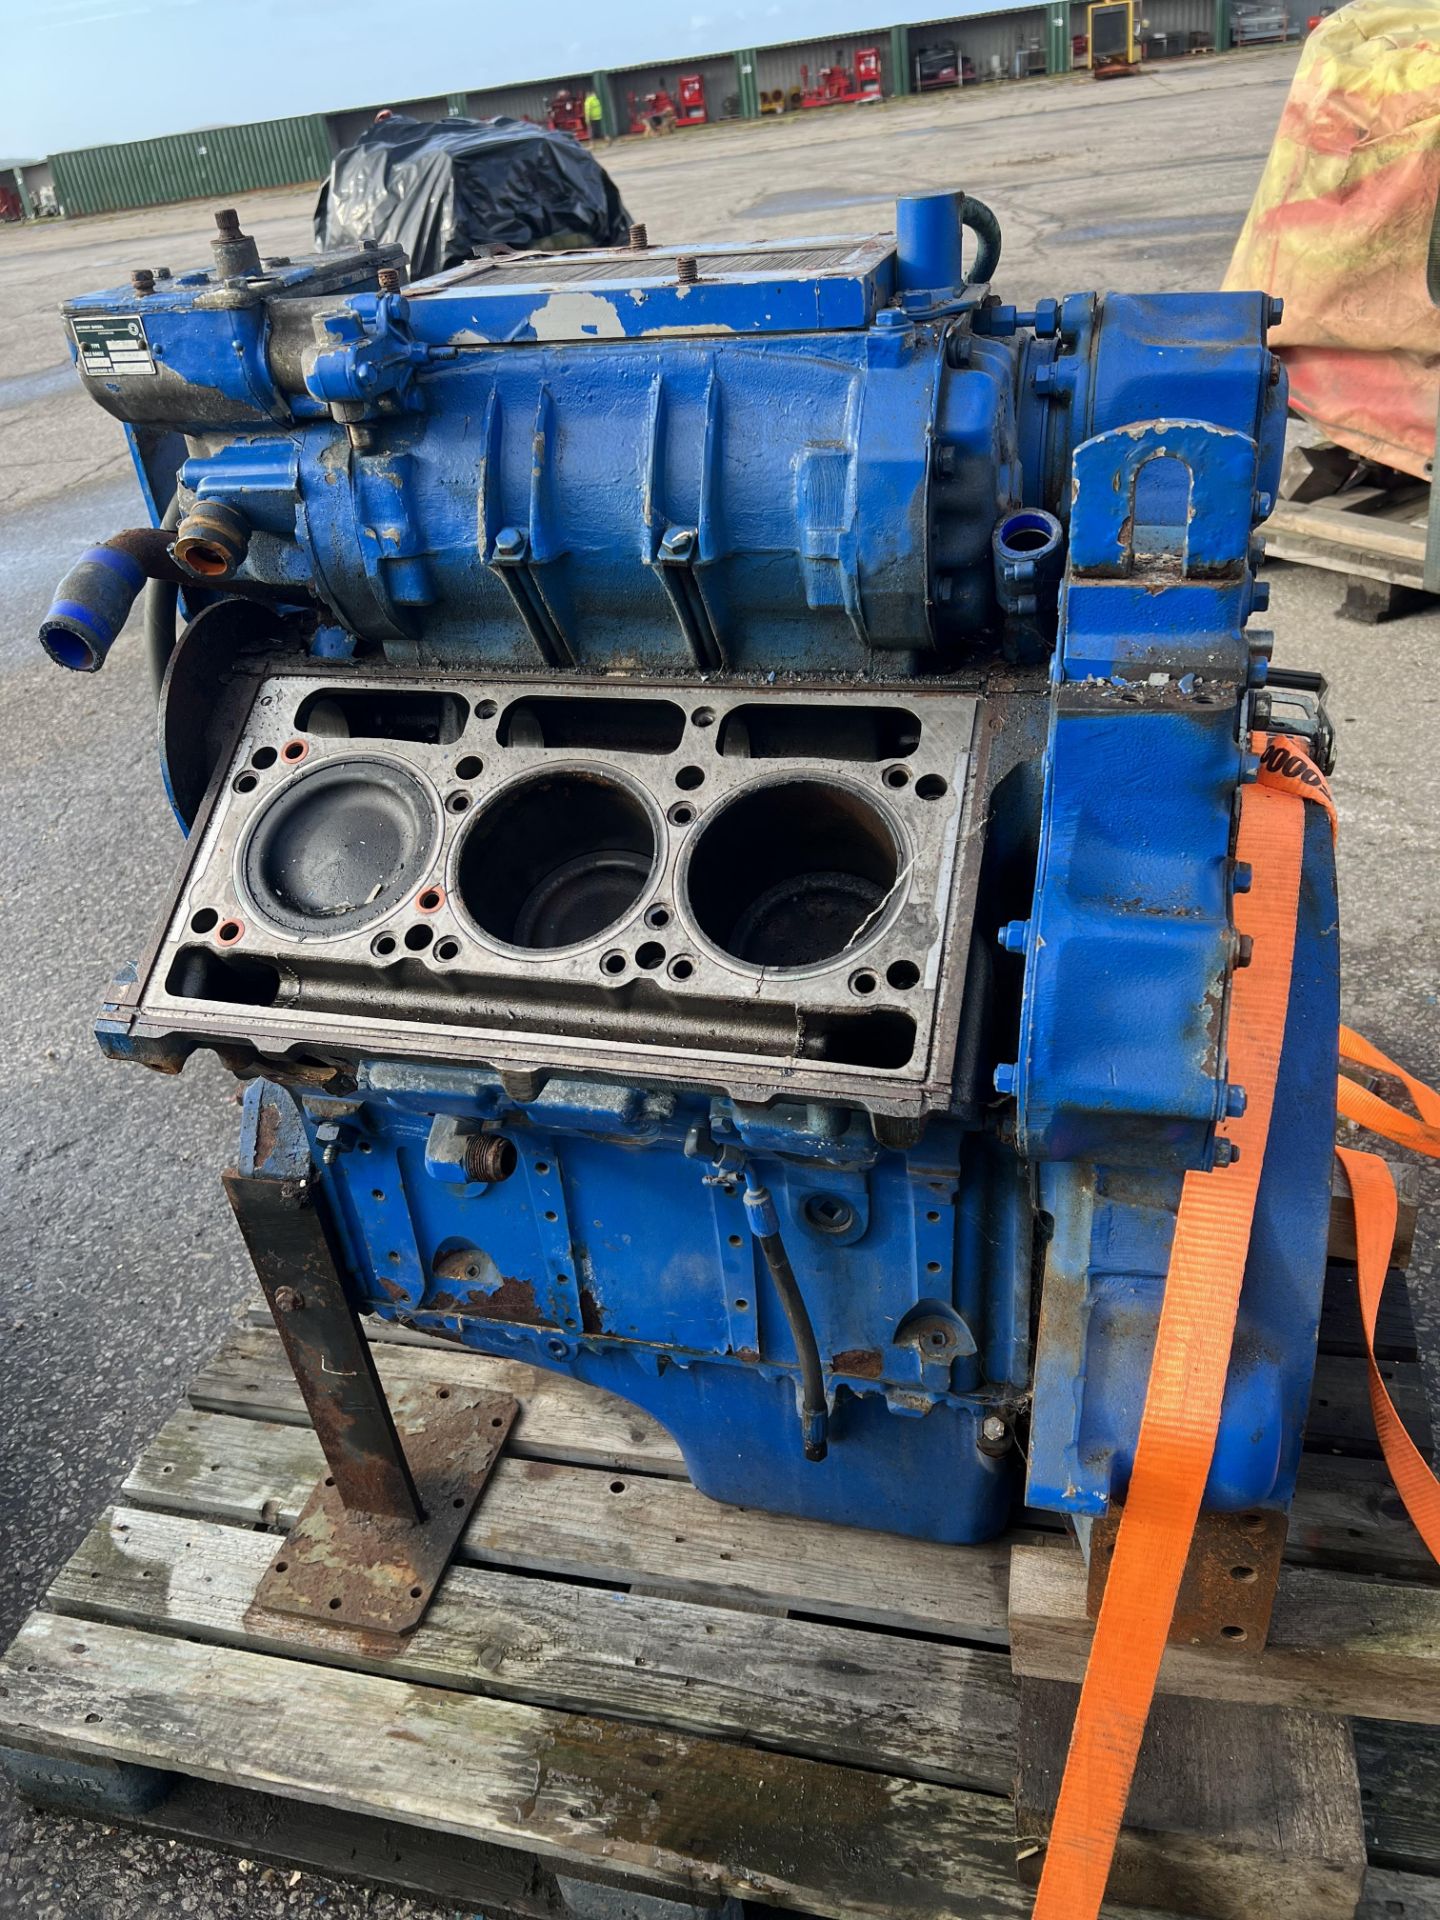 GM Detroit 6V92 Diesel Engine: - Image 3 of 5